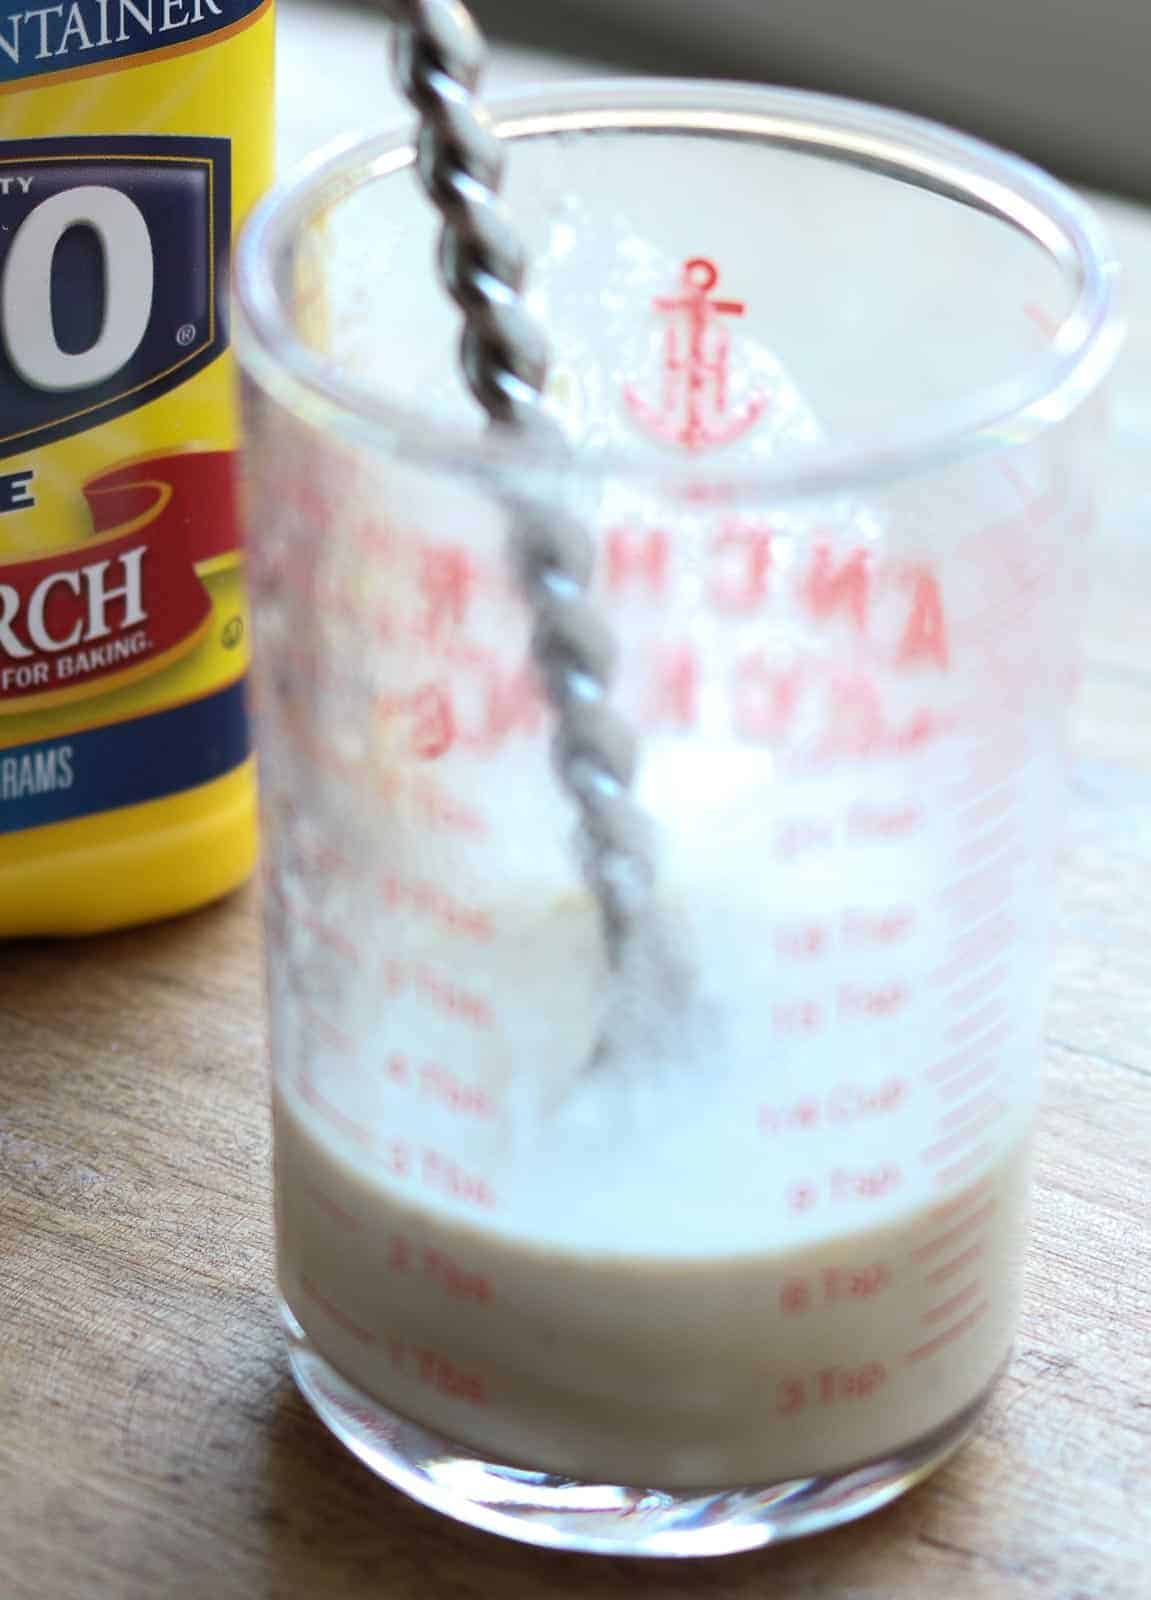 Liquid measuring cup with chicken liquid, cornstarch and spoon.